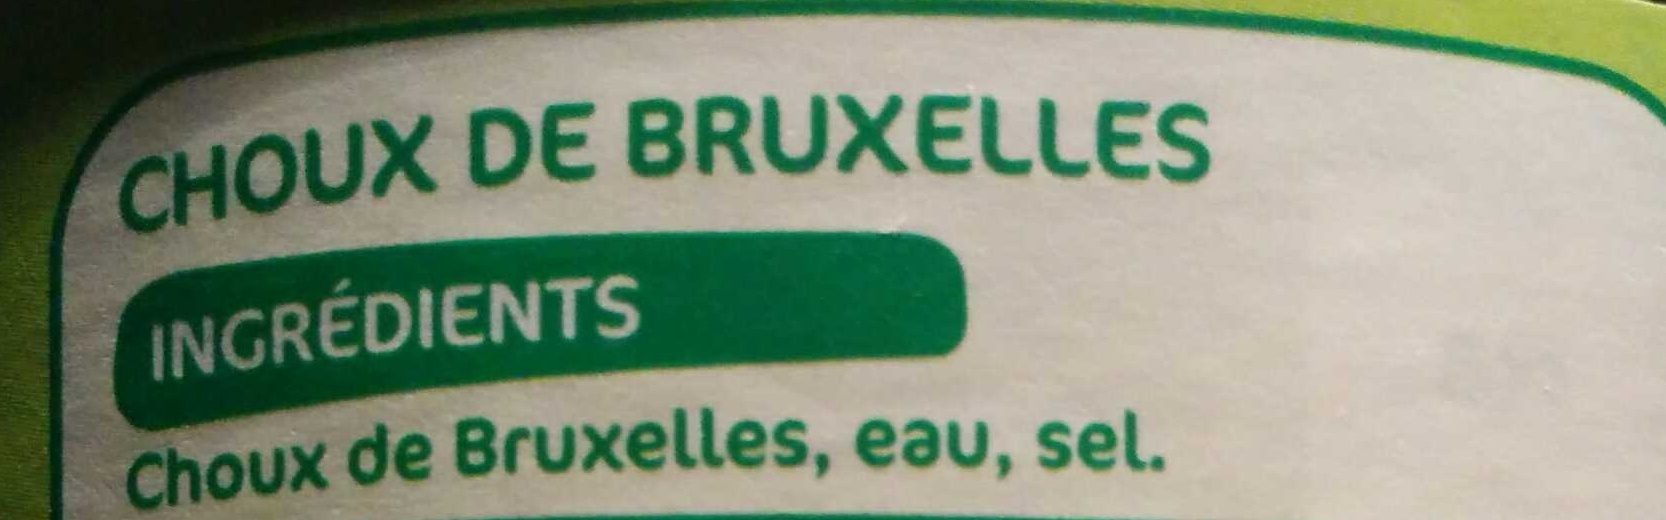 Choux de Bruxelles - Ingrédients